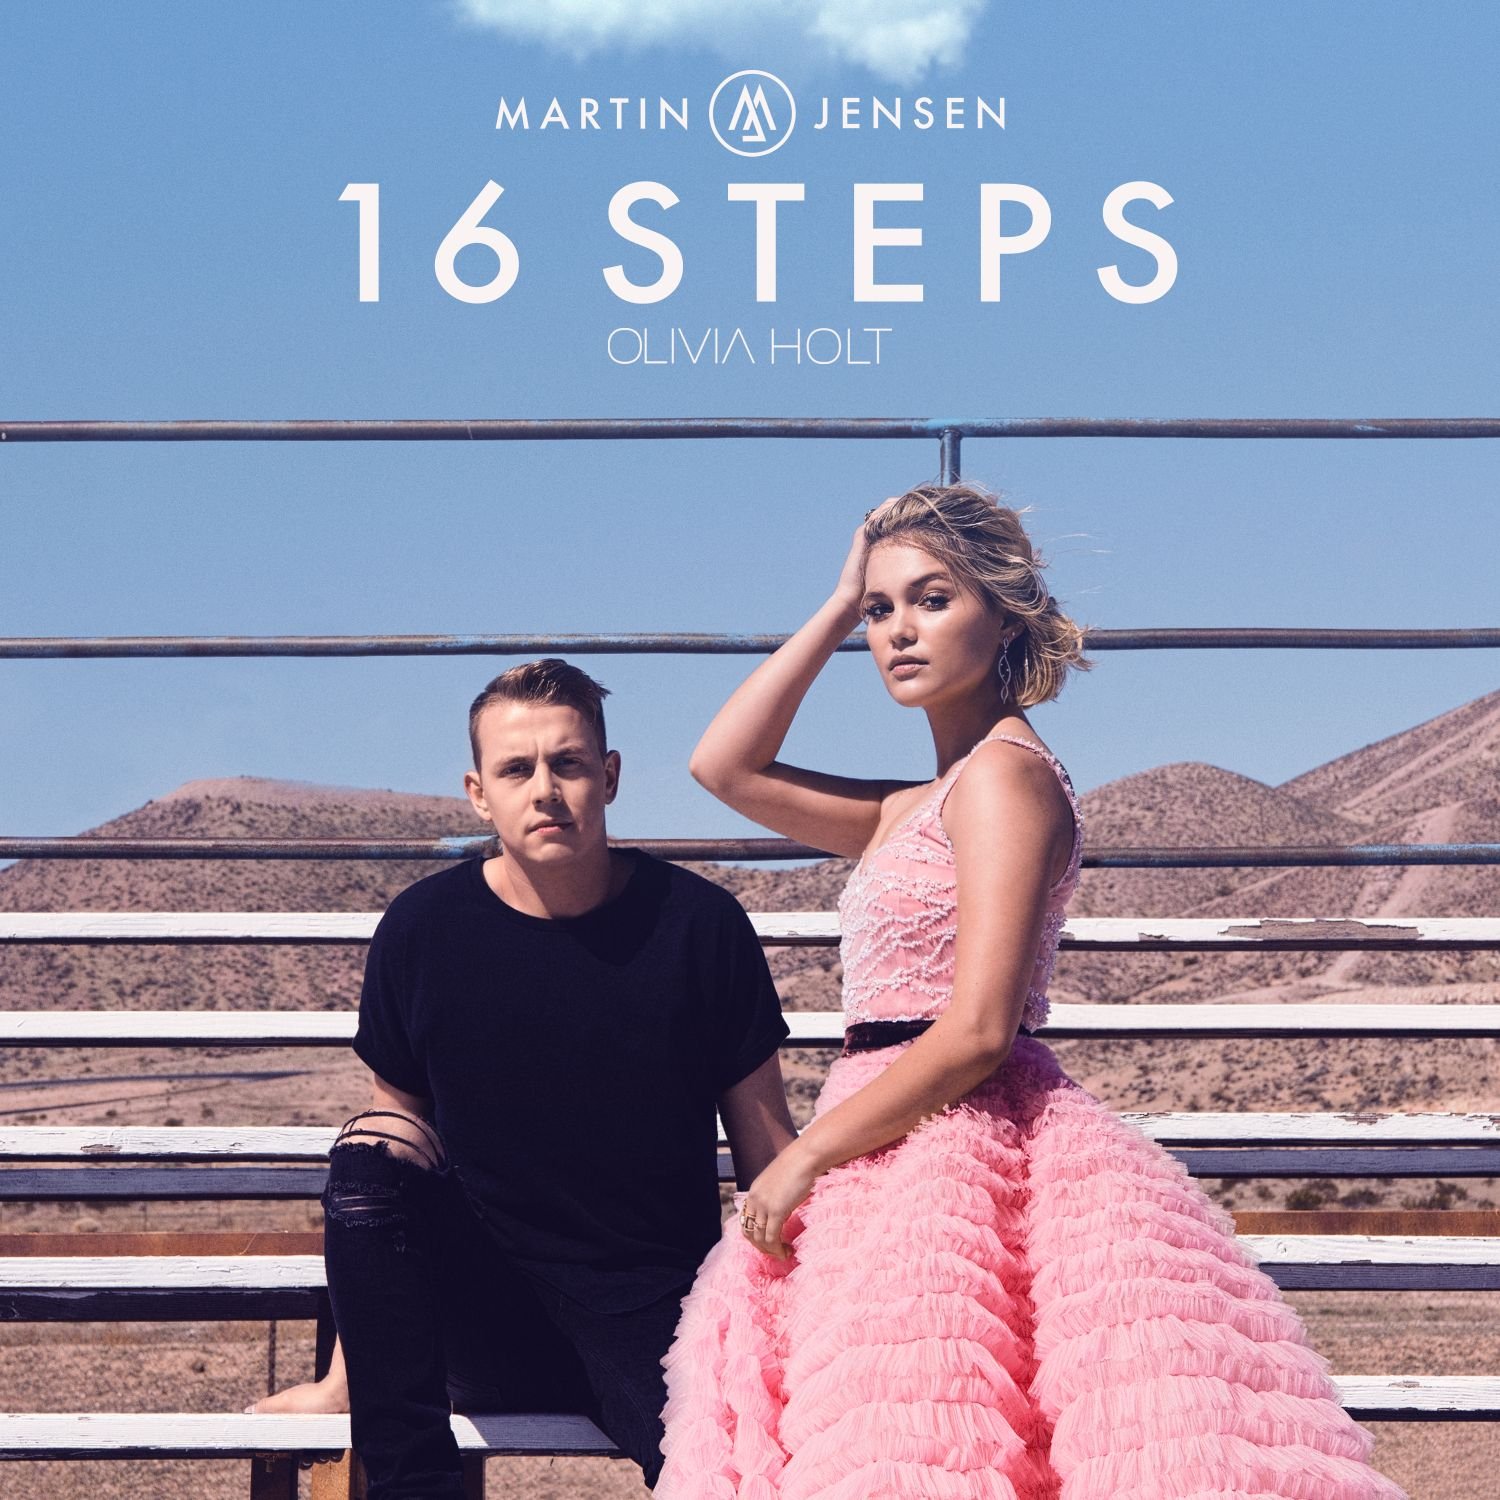 MARTIN JENSEN e OLIVIA HOLT presentano il loro singolo “16 STEPS” in radio da venerdì 27 luglio e già negli store digitali